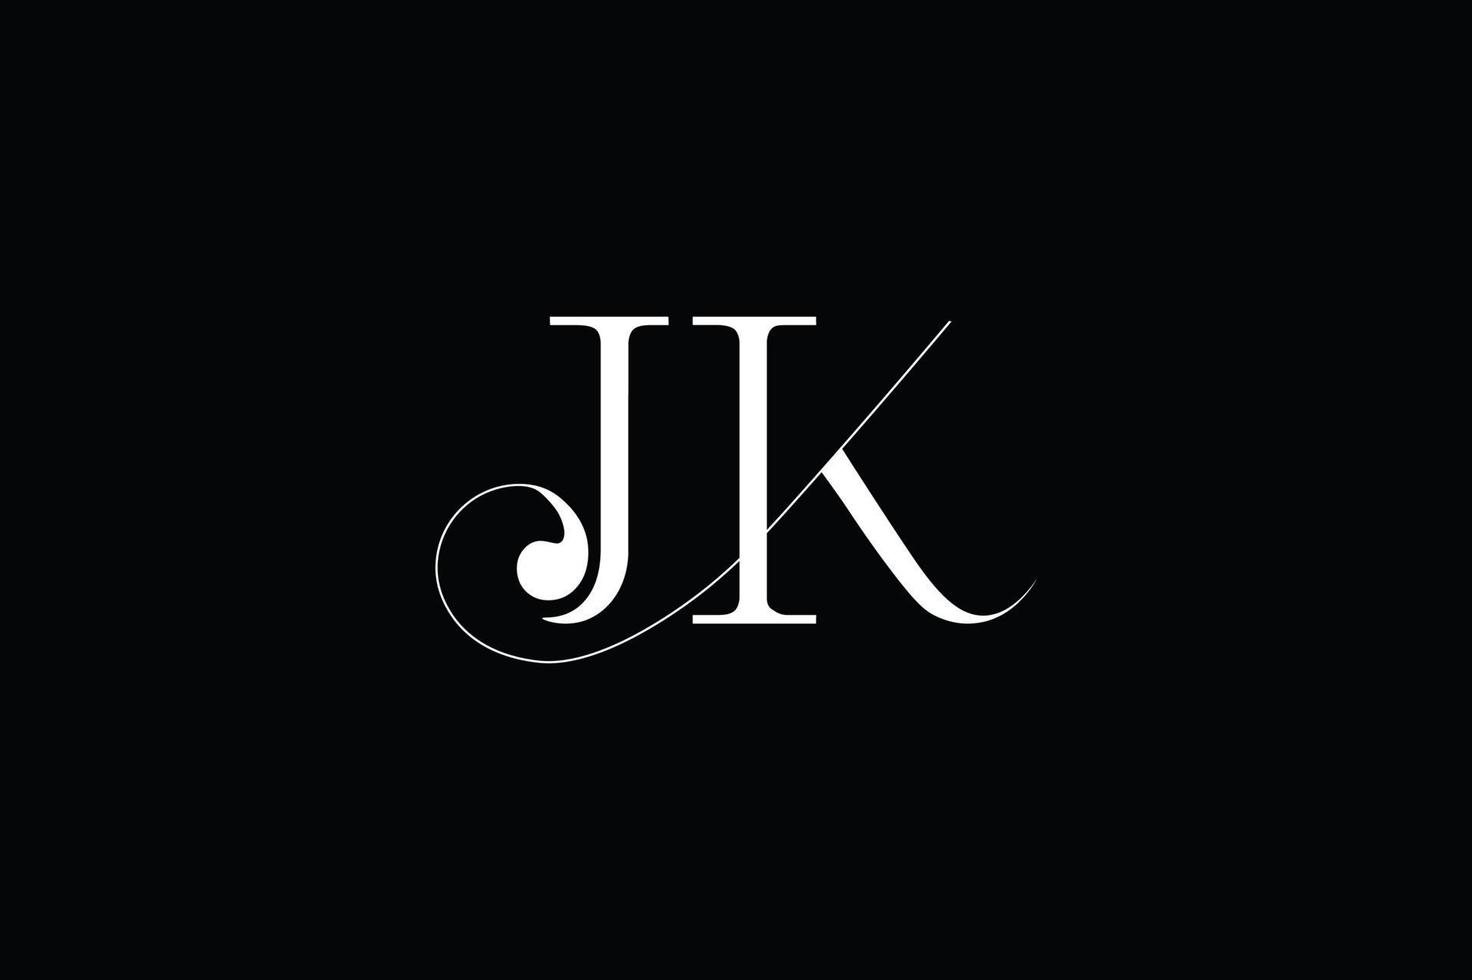 jk dernier logo, jk ligature logo vecteur